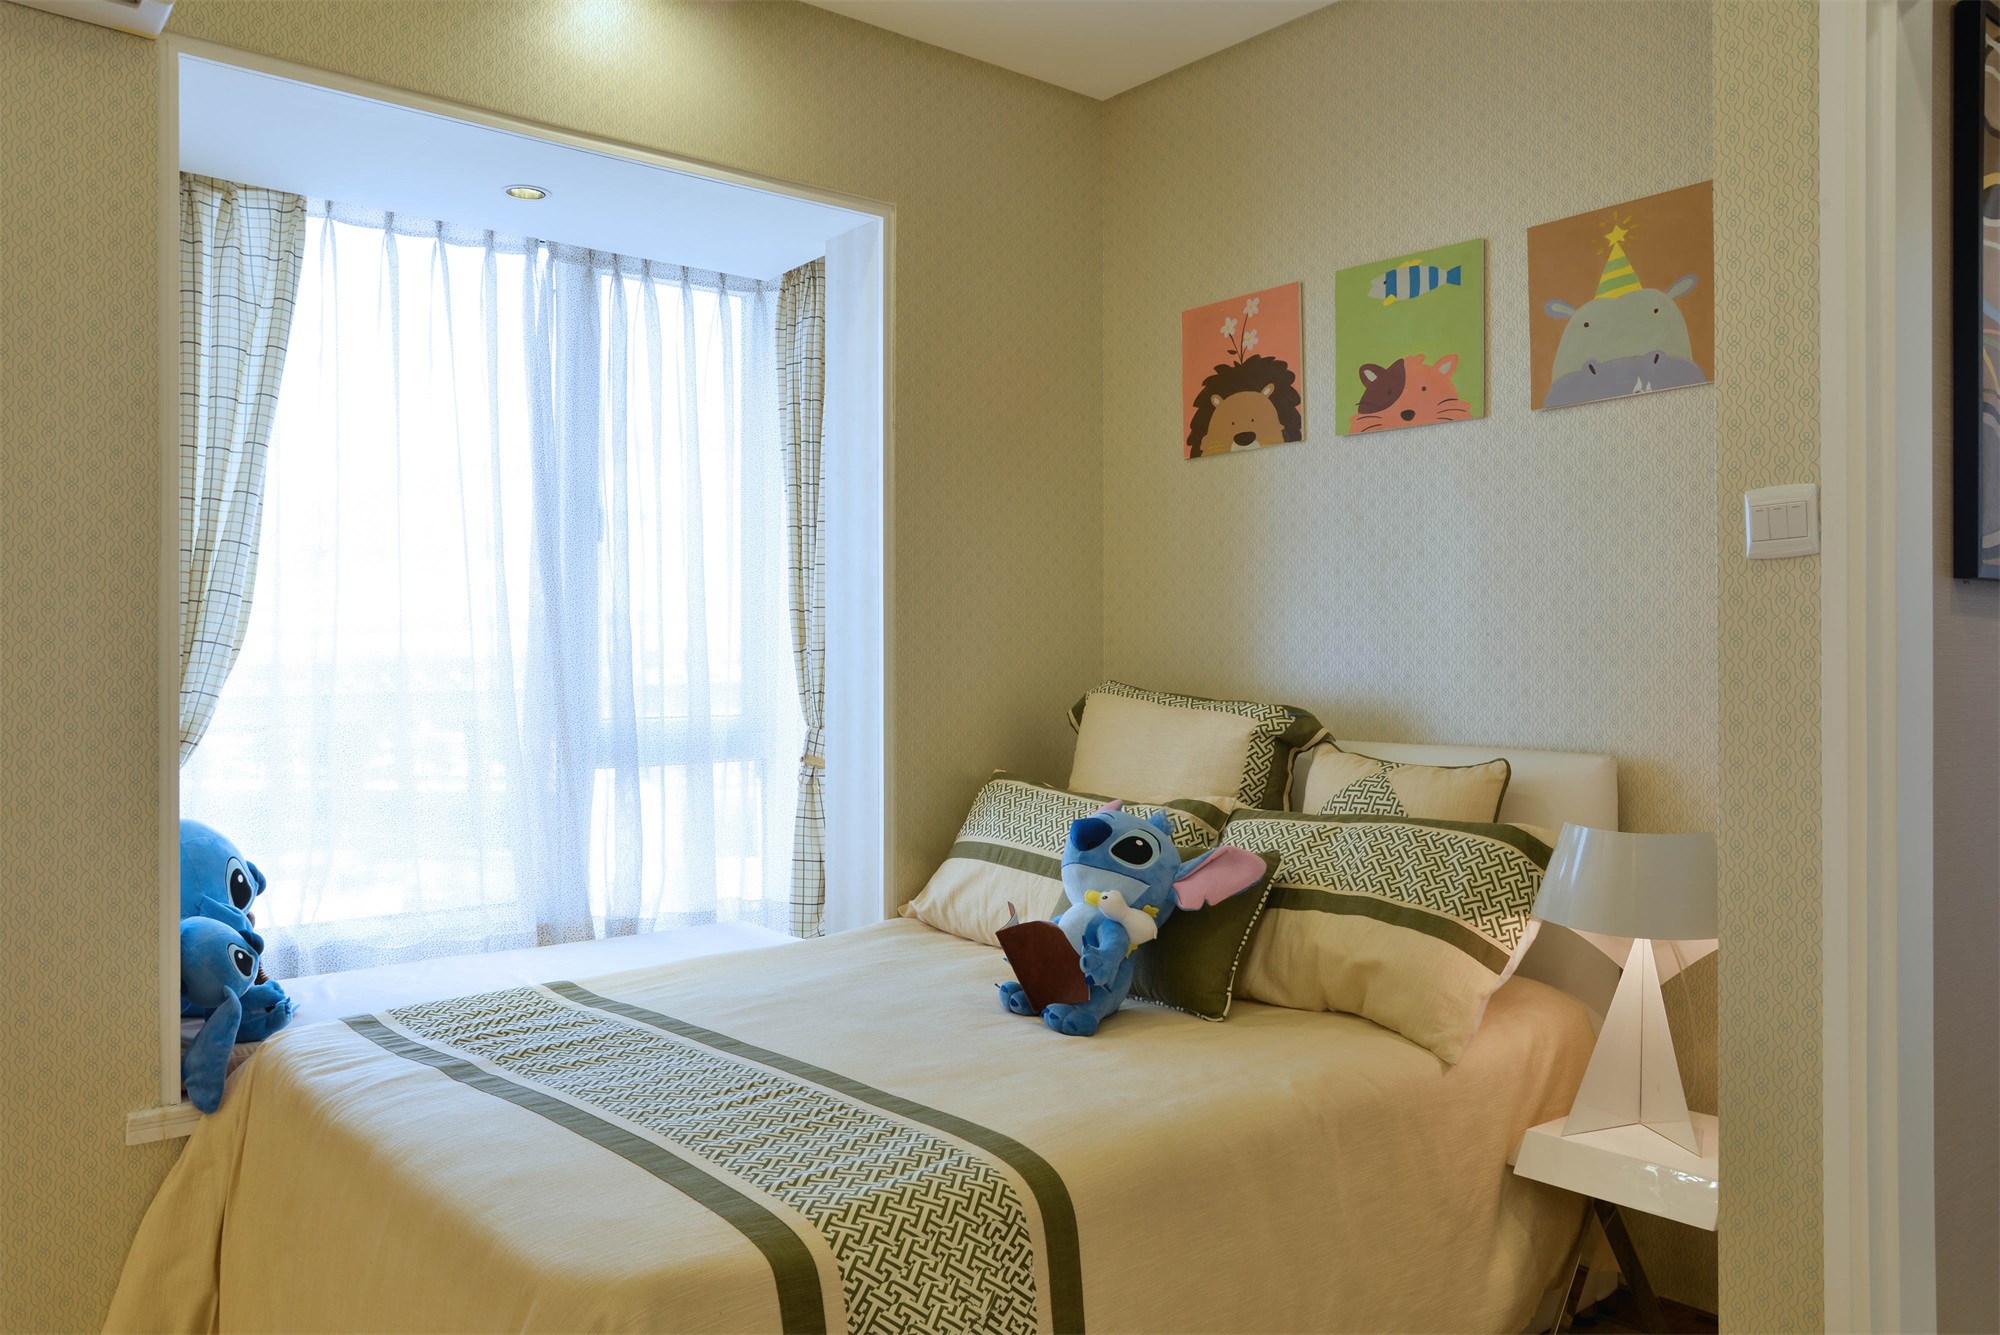 儿童房童趣十足，不仅有趣味的床品和可爱的装饰画，还有充满文艺的背景墙，整体温馨而舒适。